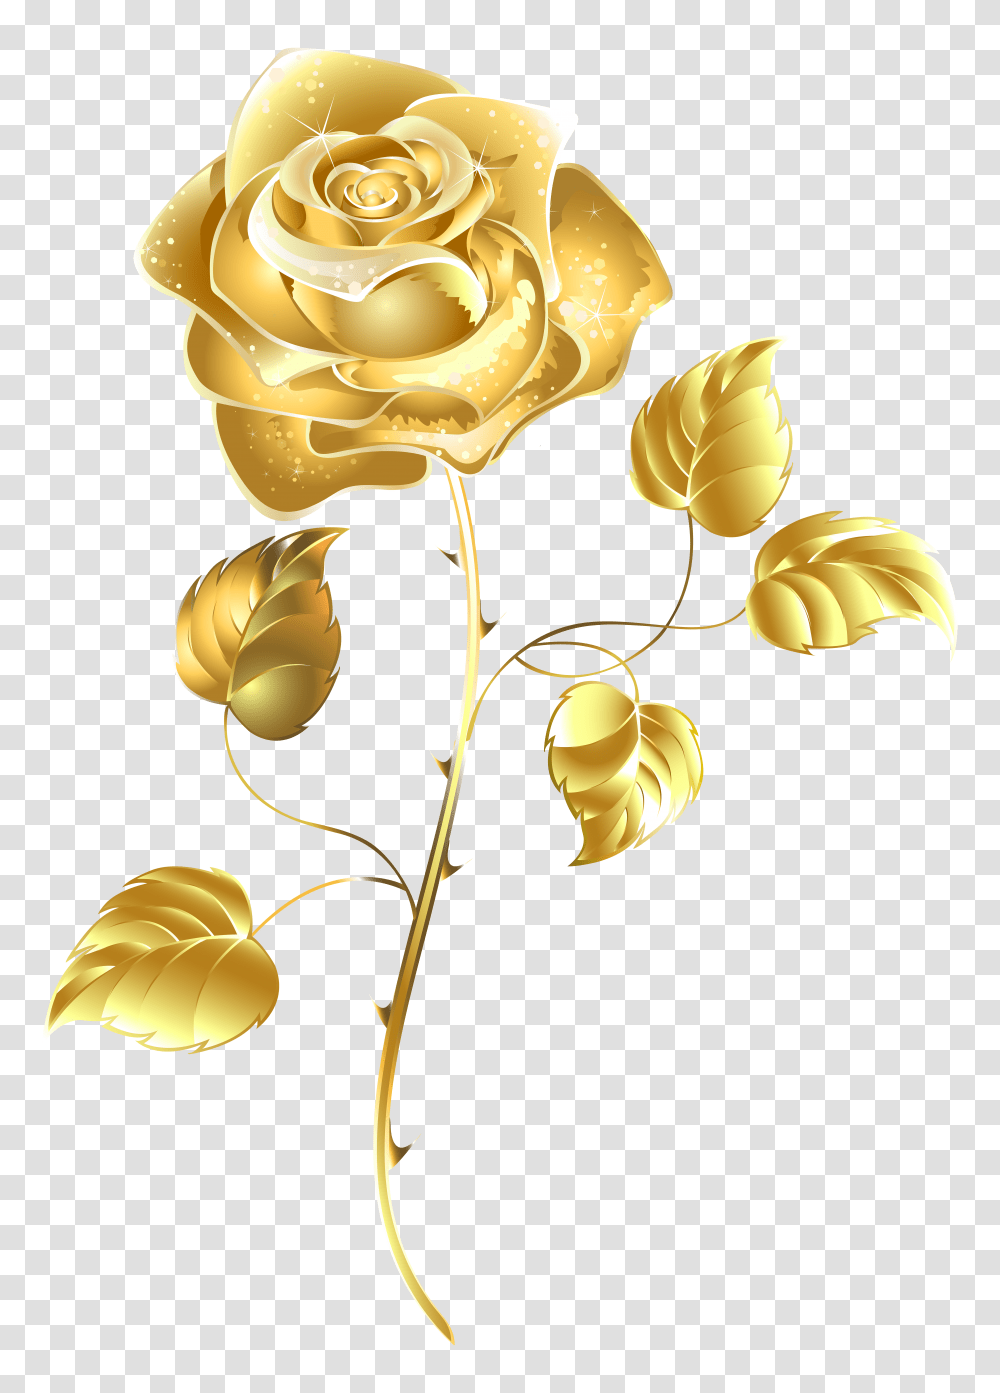 Golden Rose Image Background Gold Flower Transparent Png